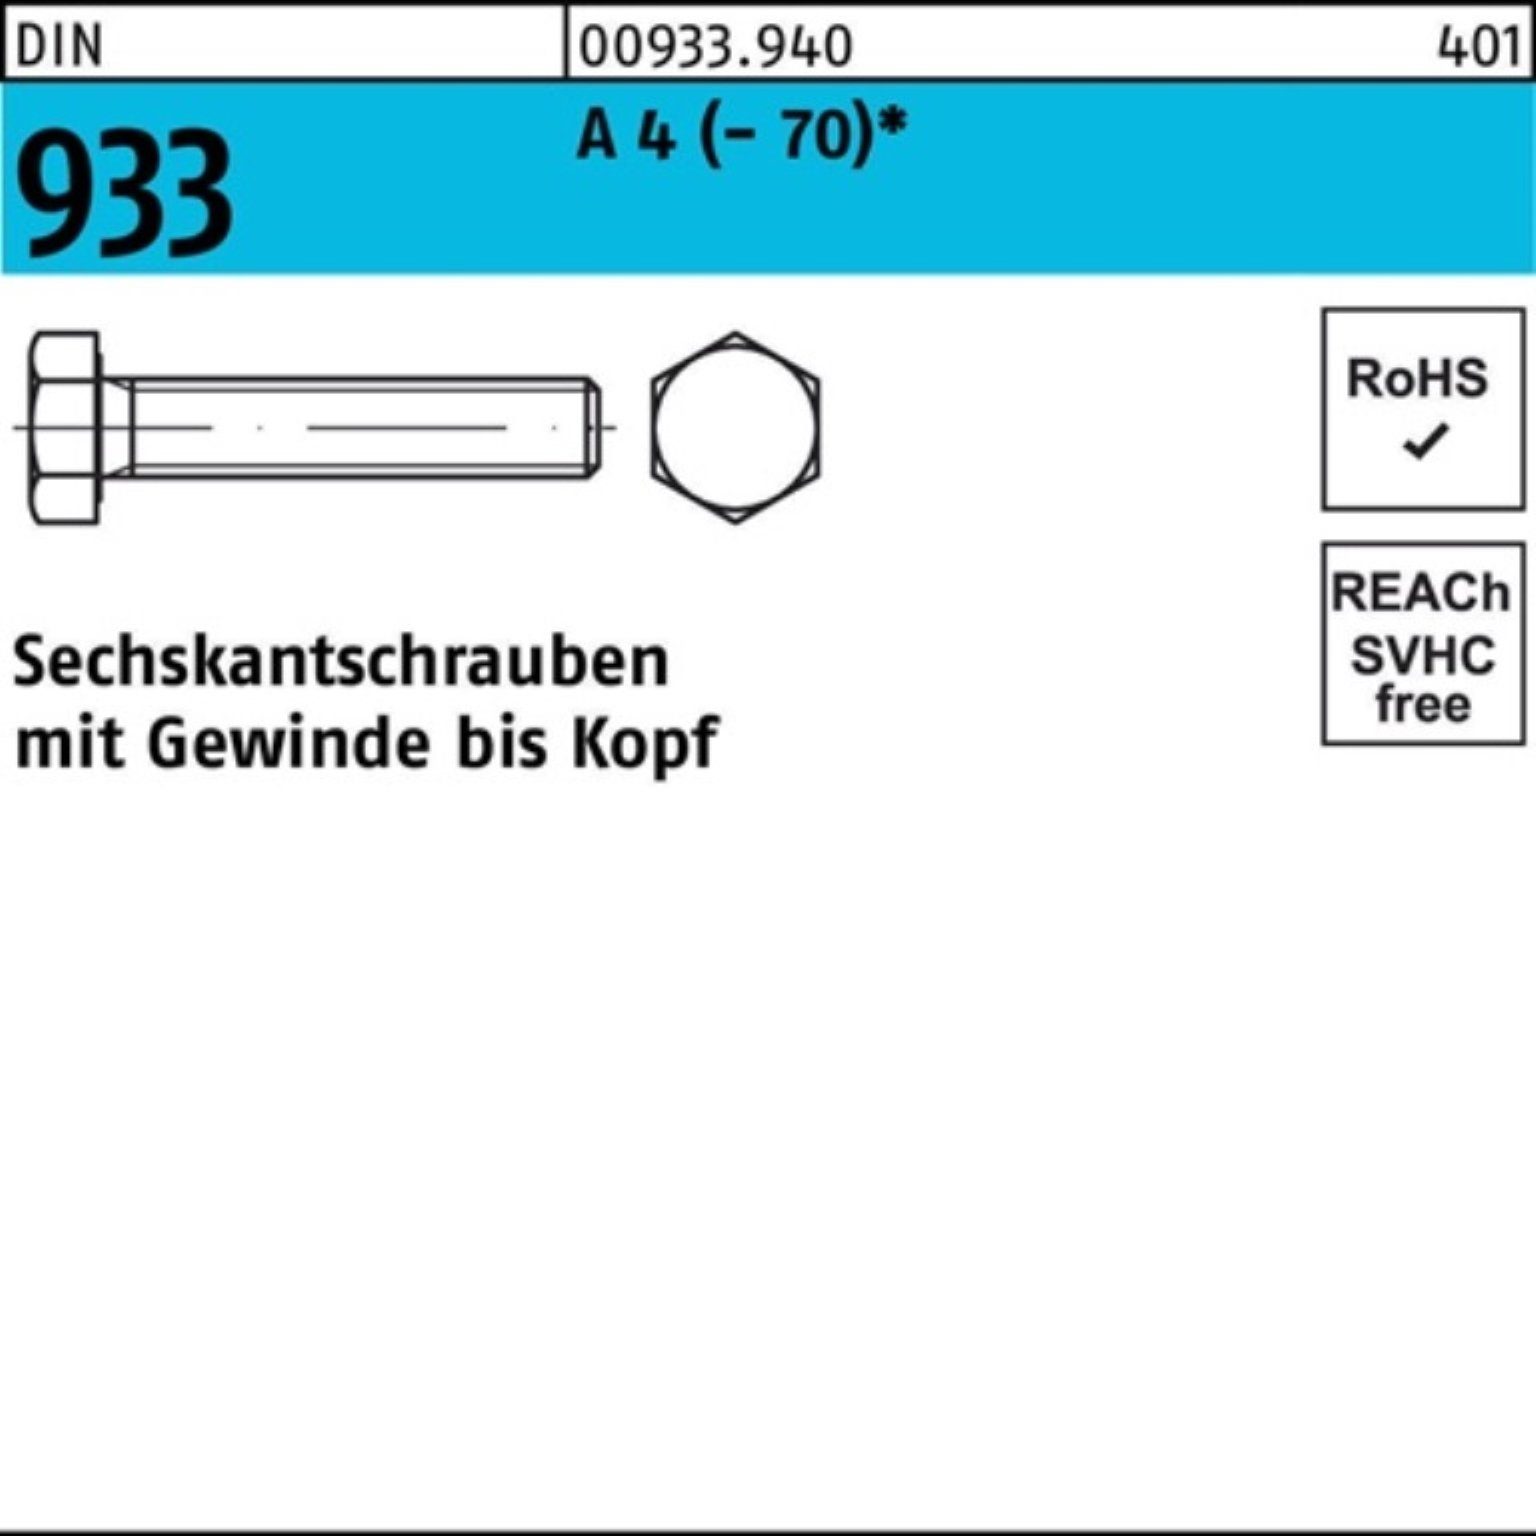 Reyher Sechskantschraube 100er Stück Pack DI VG 933 (70) DIN 50 M8x Sechskantschraube 4 A 90